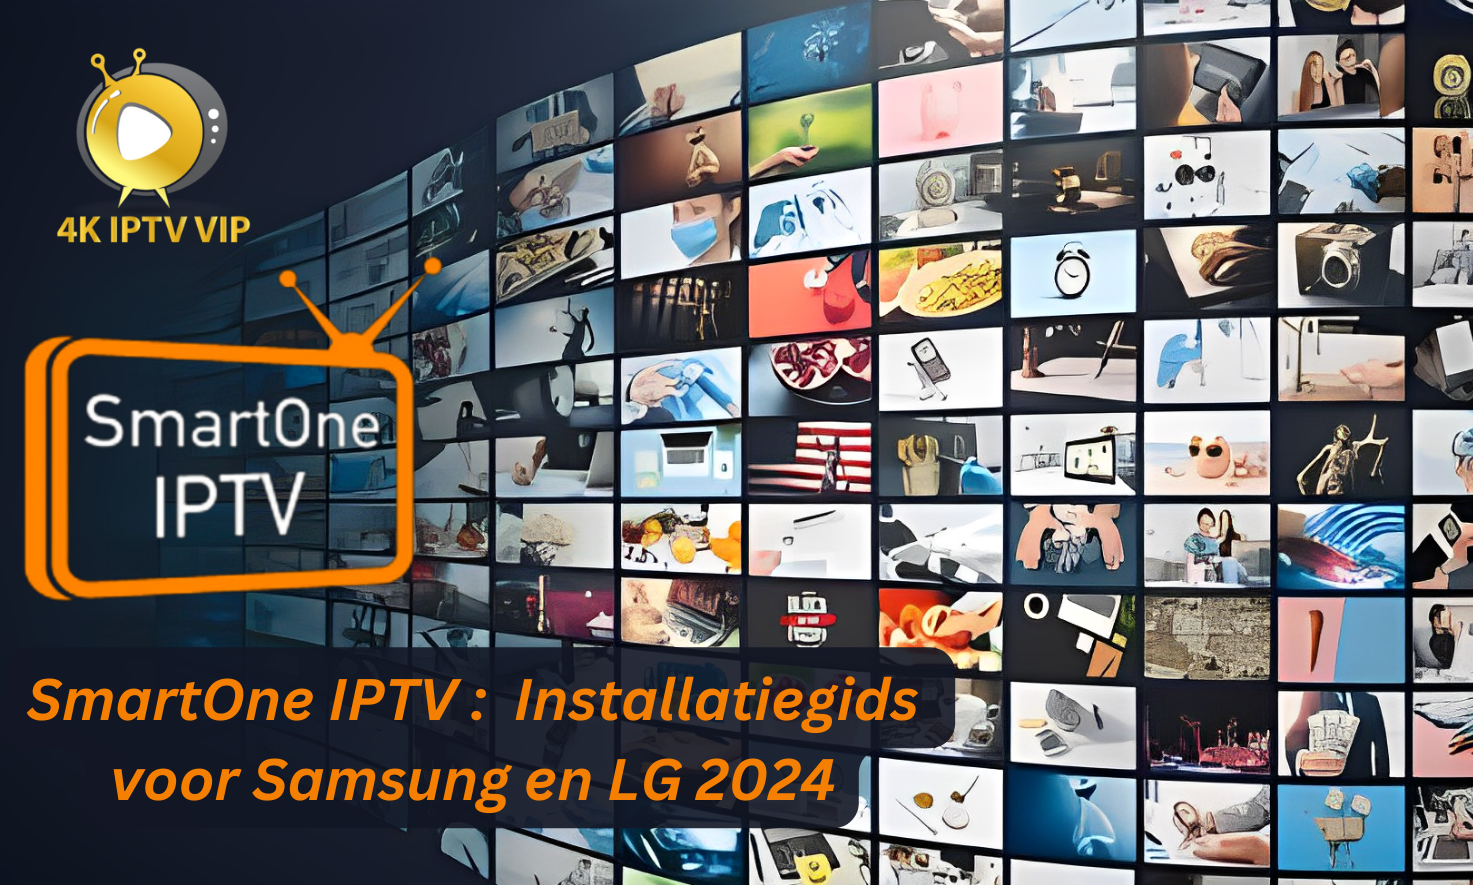 SmartOne IPTV Installatiegids voor Samsung en LG 2024